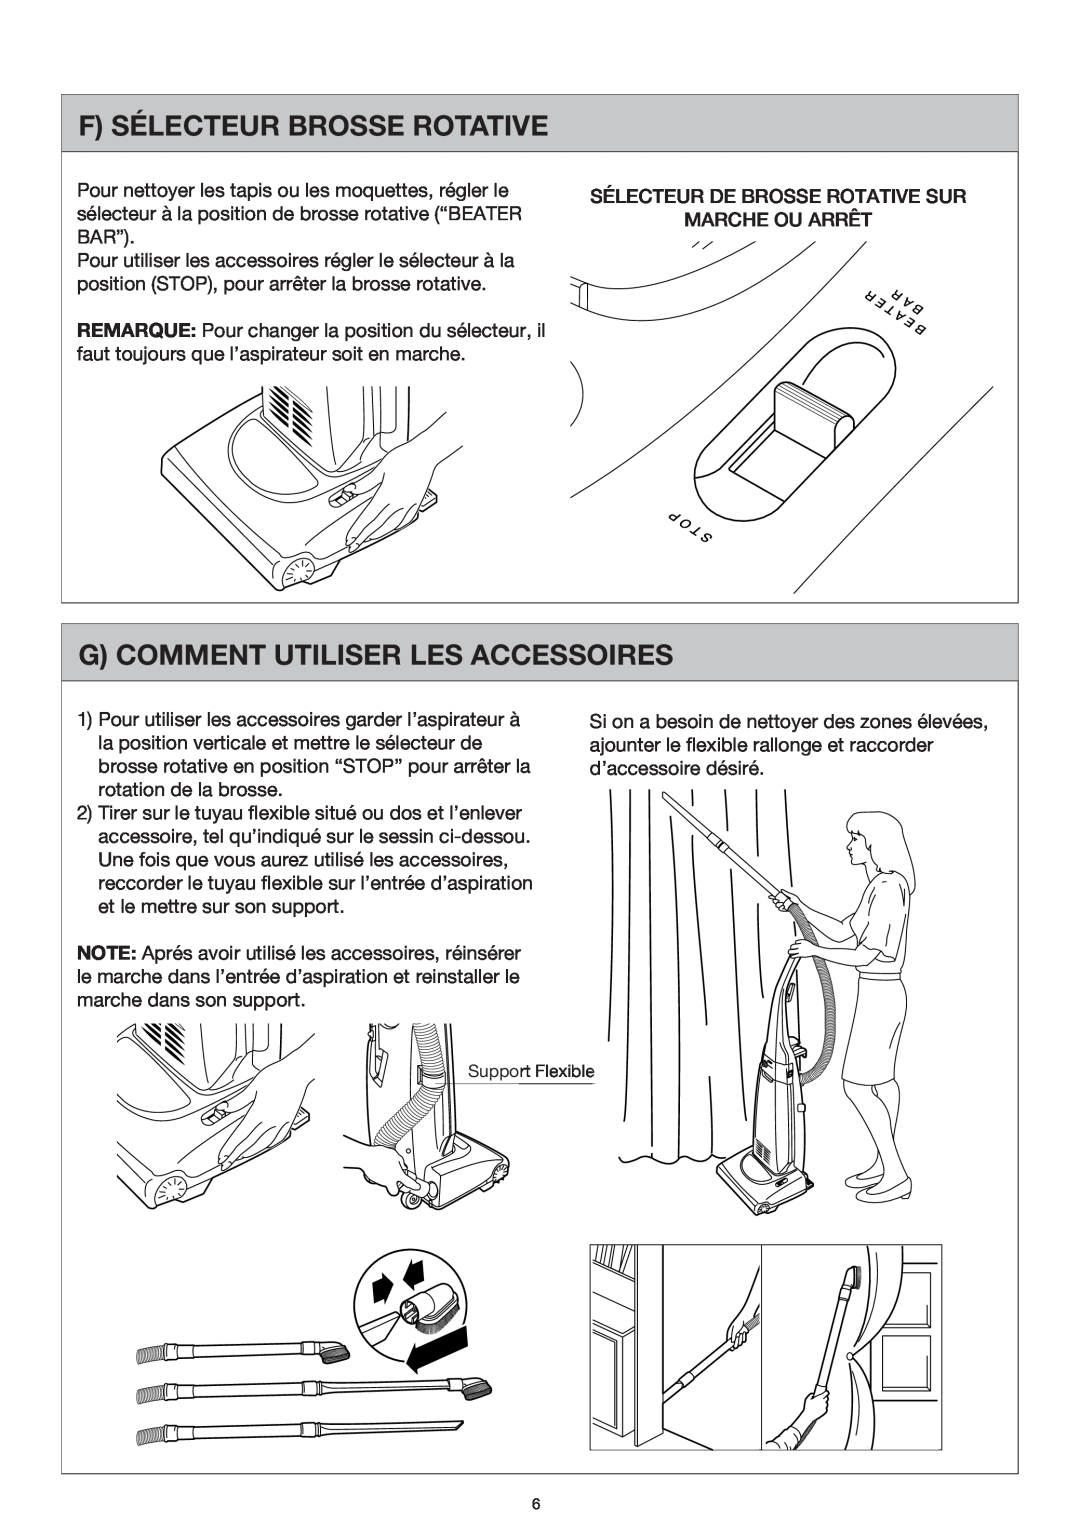 Miele S177i, S176i important safety instructions F Sélecteur Brosse Rotative, G Comment Utiliser Les Accessoires 